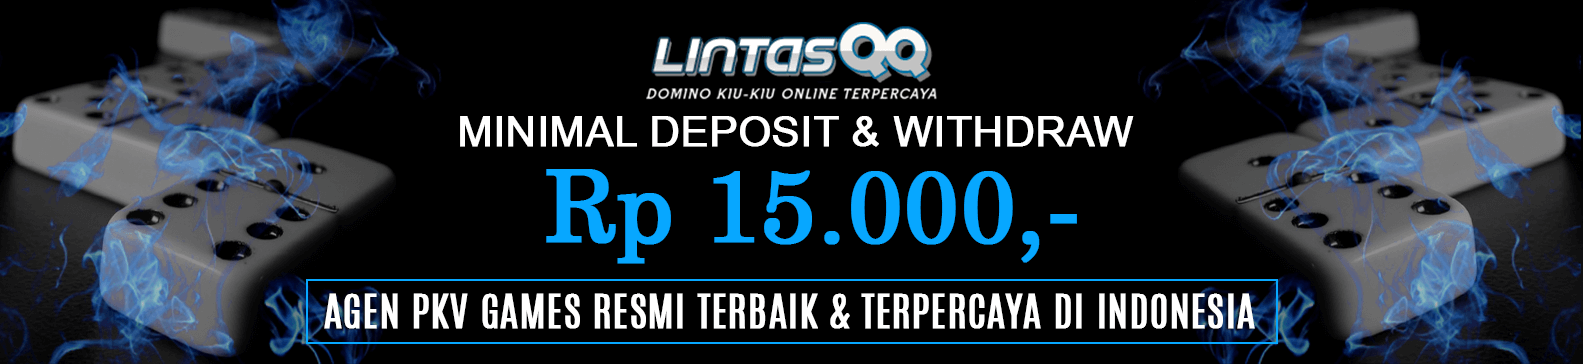 LintasQQ Minimal Deposit